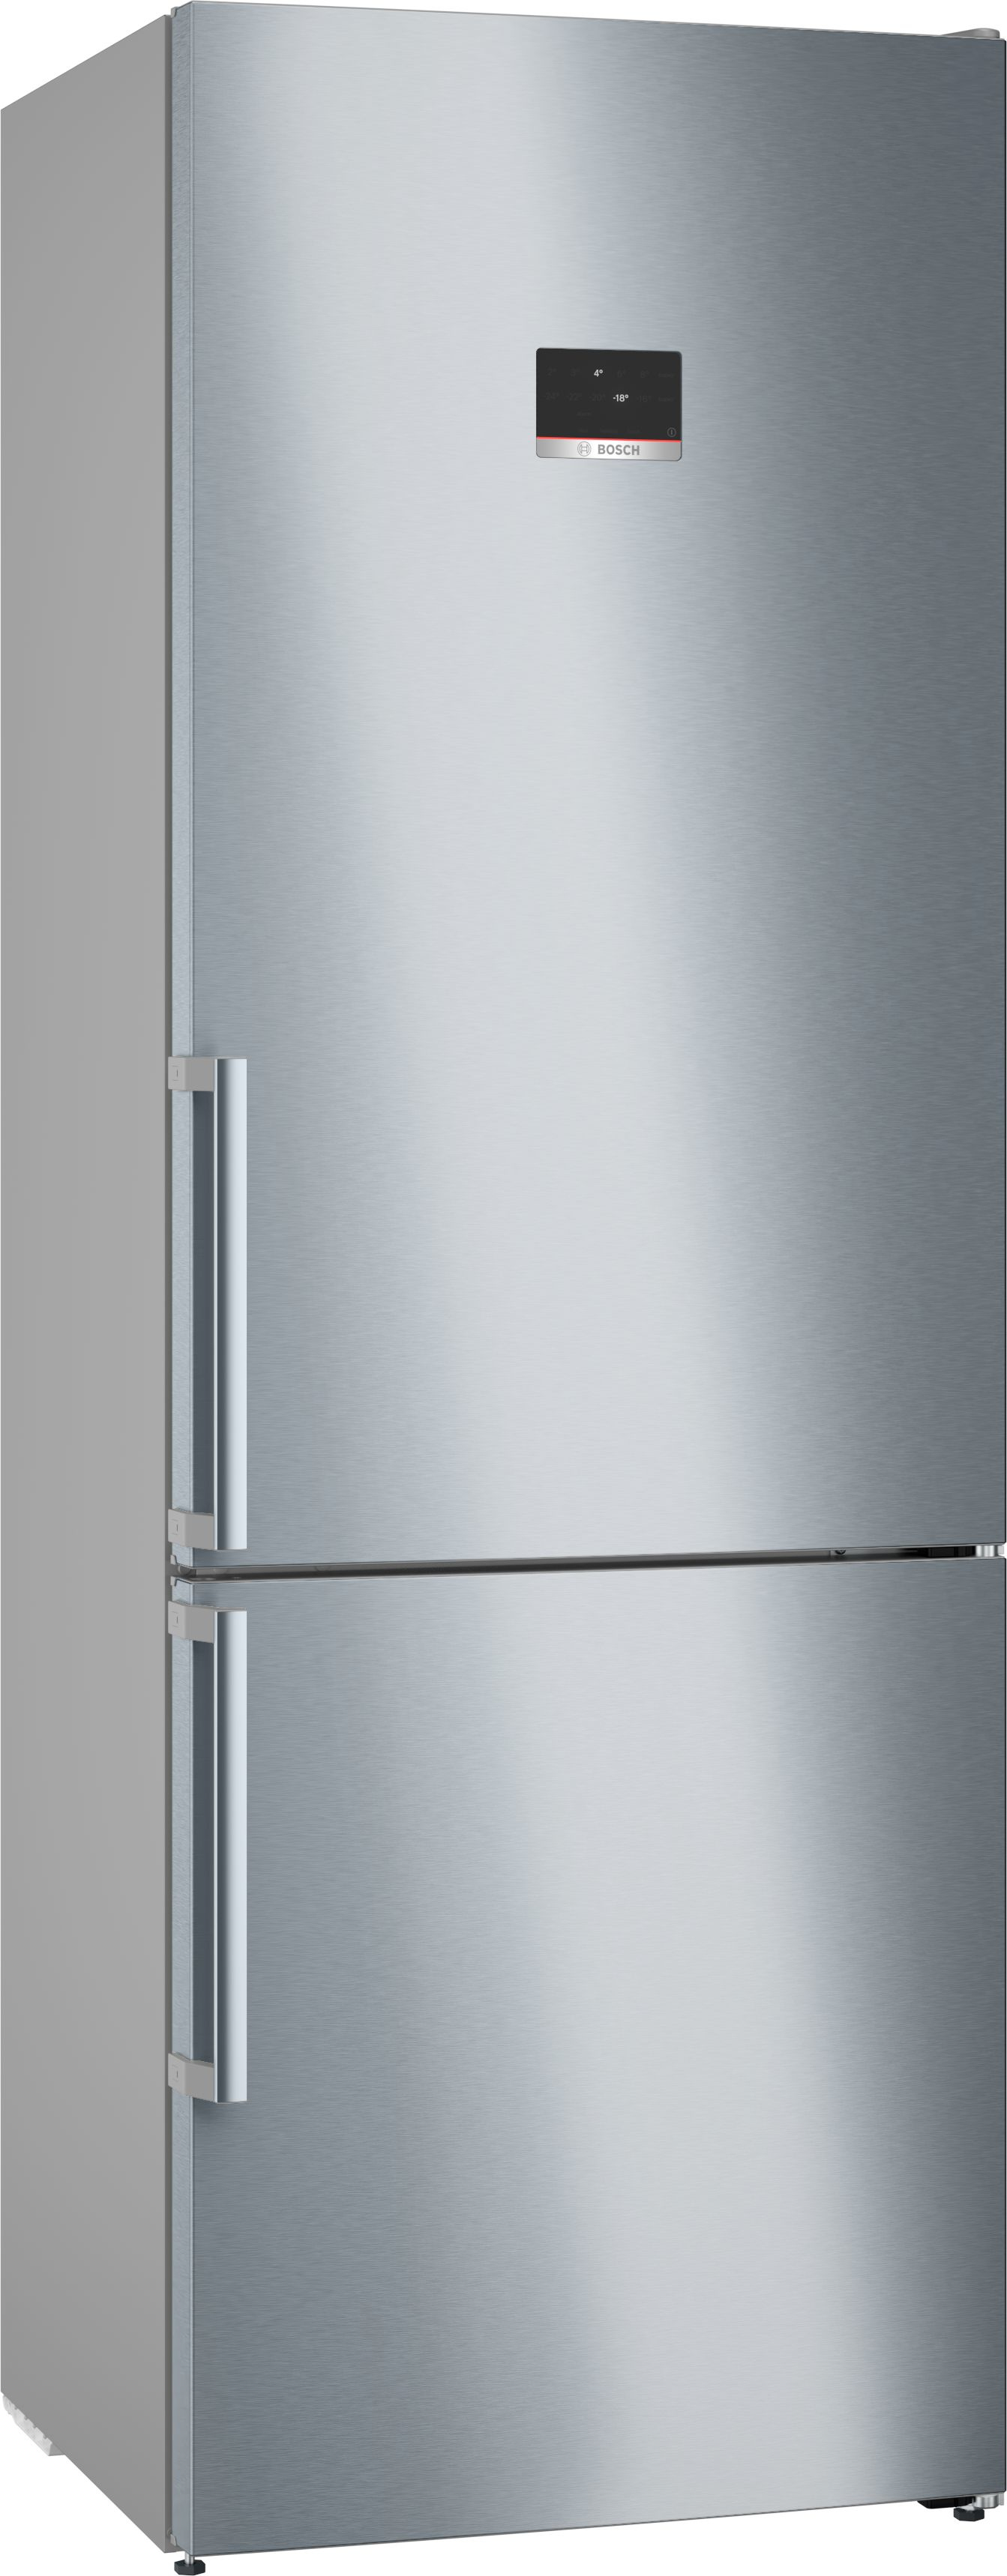 bsh elettrodomestici spa bosch serie 6 kgn49aict frigorifero con congelatore libera installazione 440 l c acciaio inossidabile nero uomo